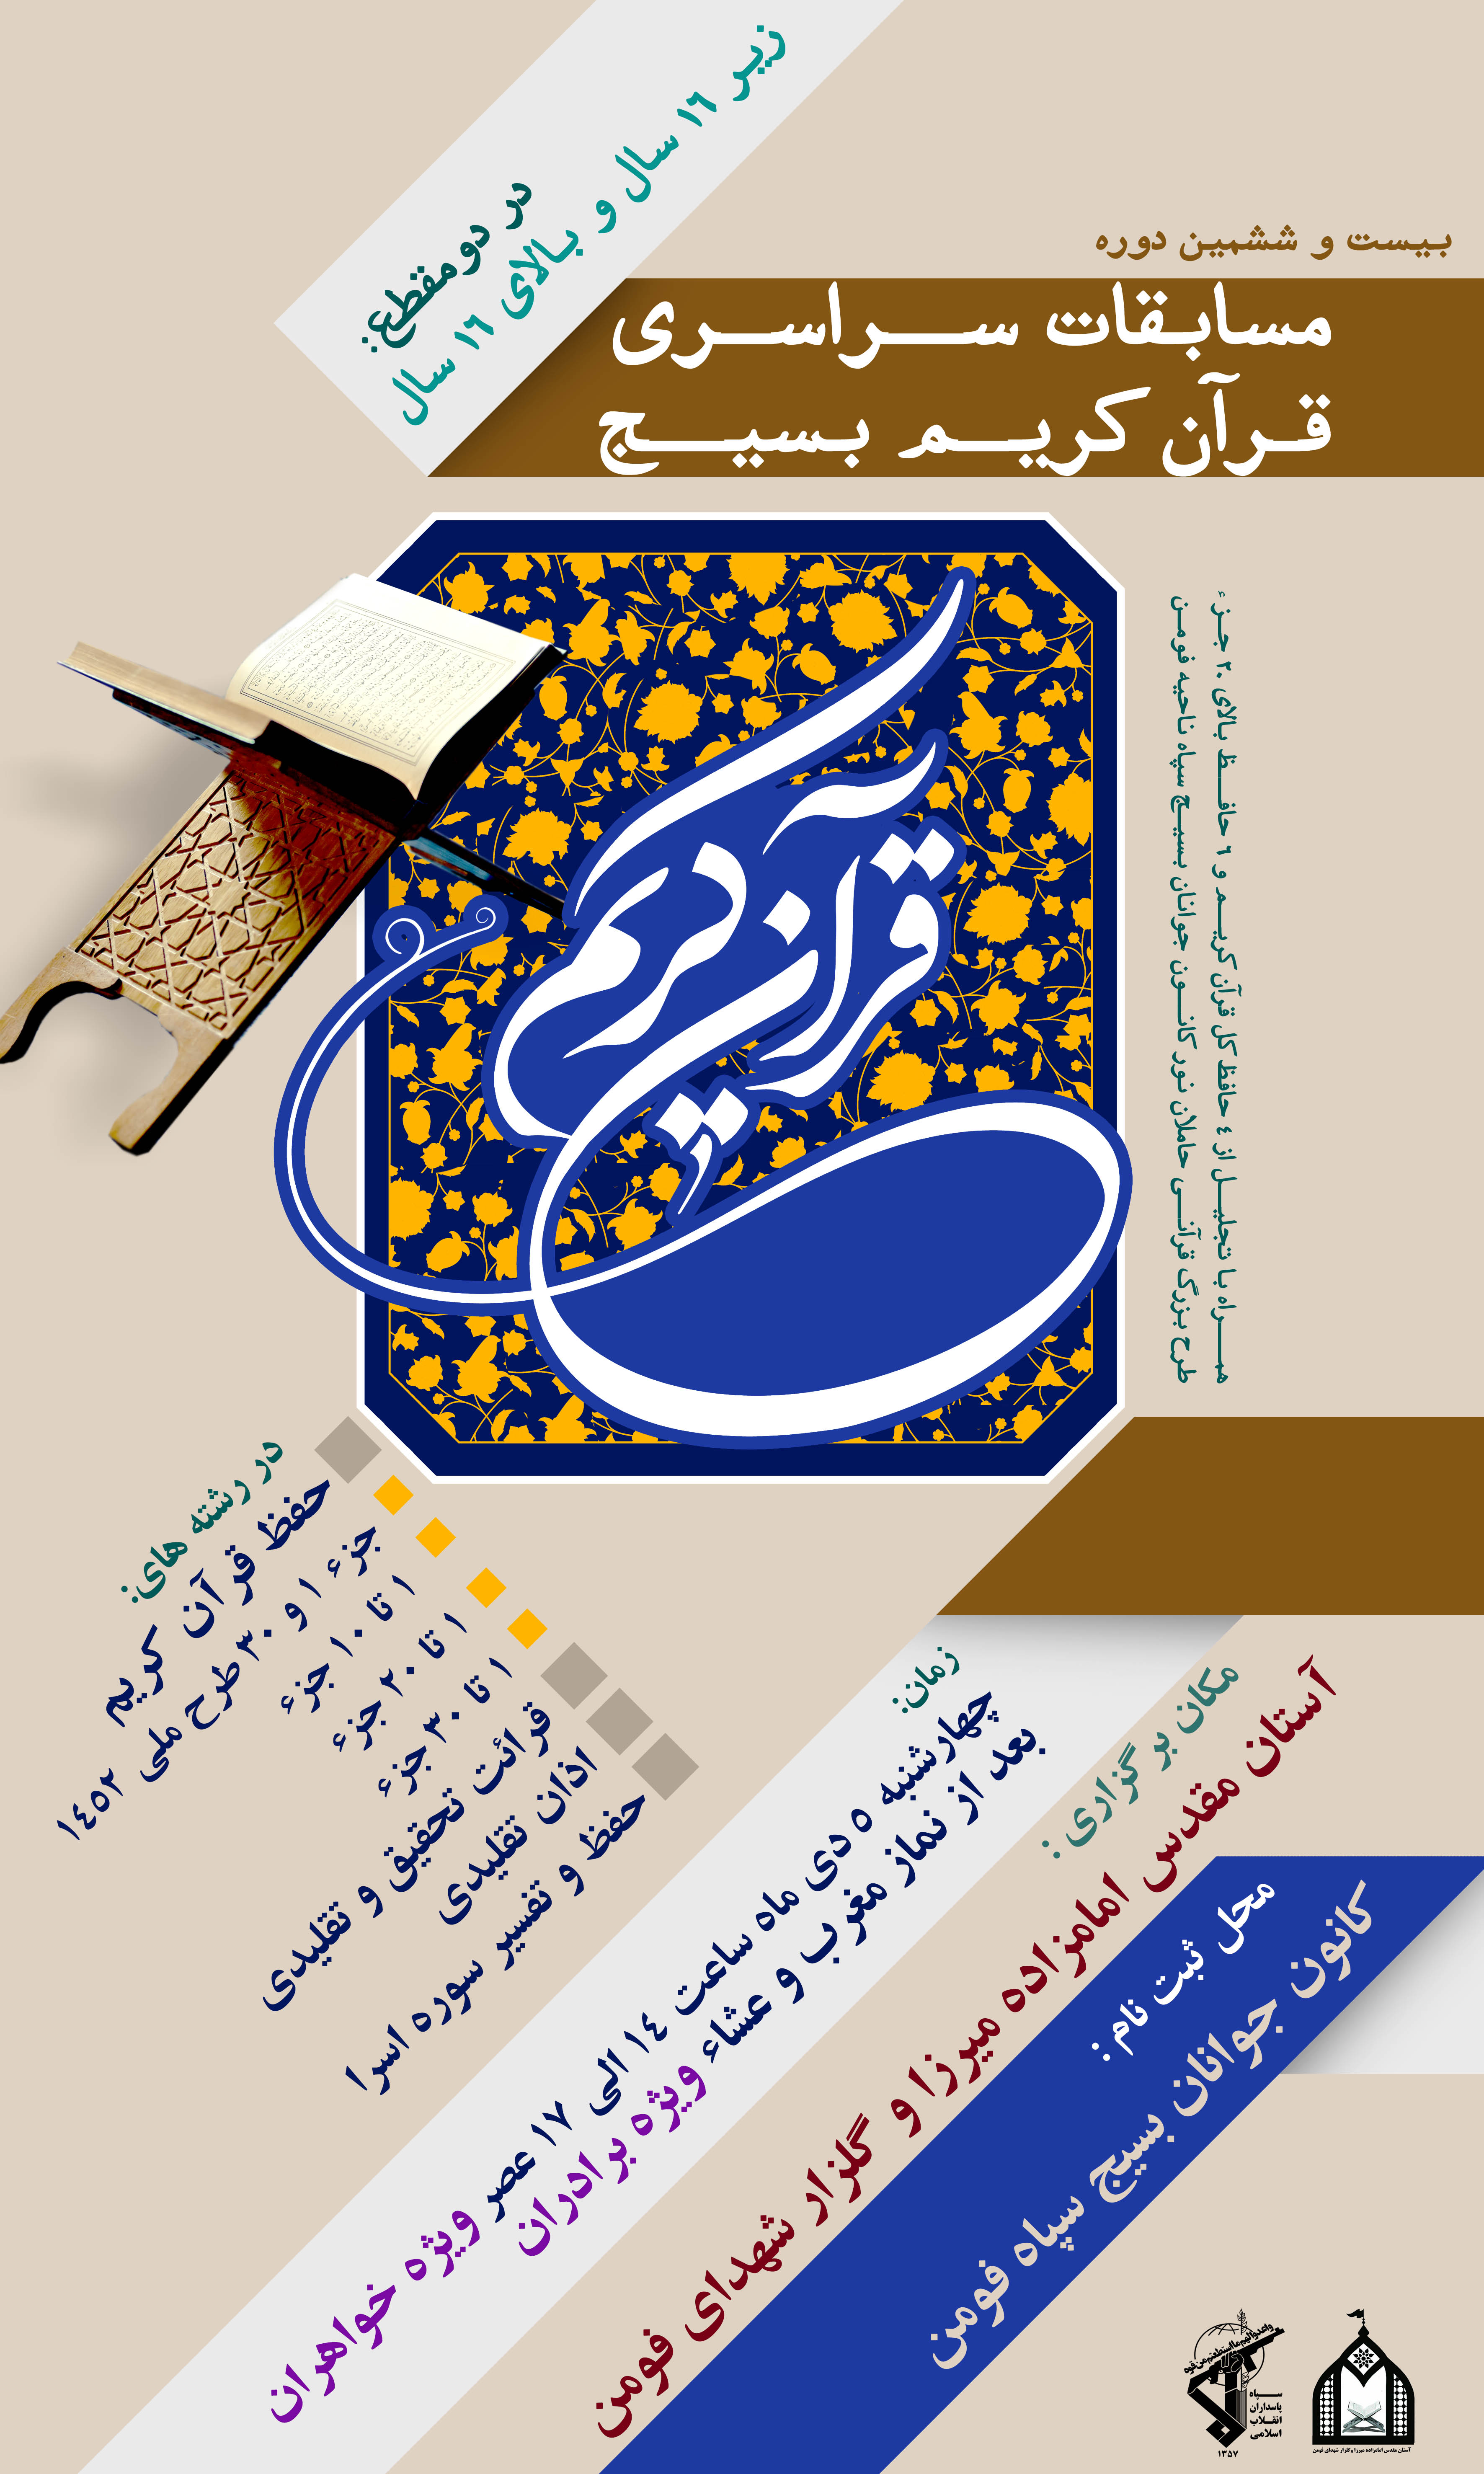 بیست و ششمین دوره مسابقات قرآنی بسیج در ۱۴ رشته برگزار می شود